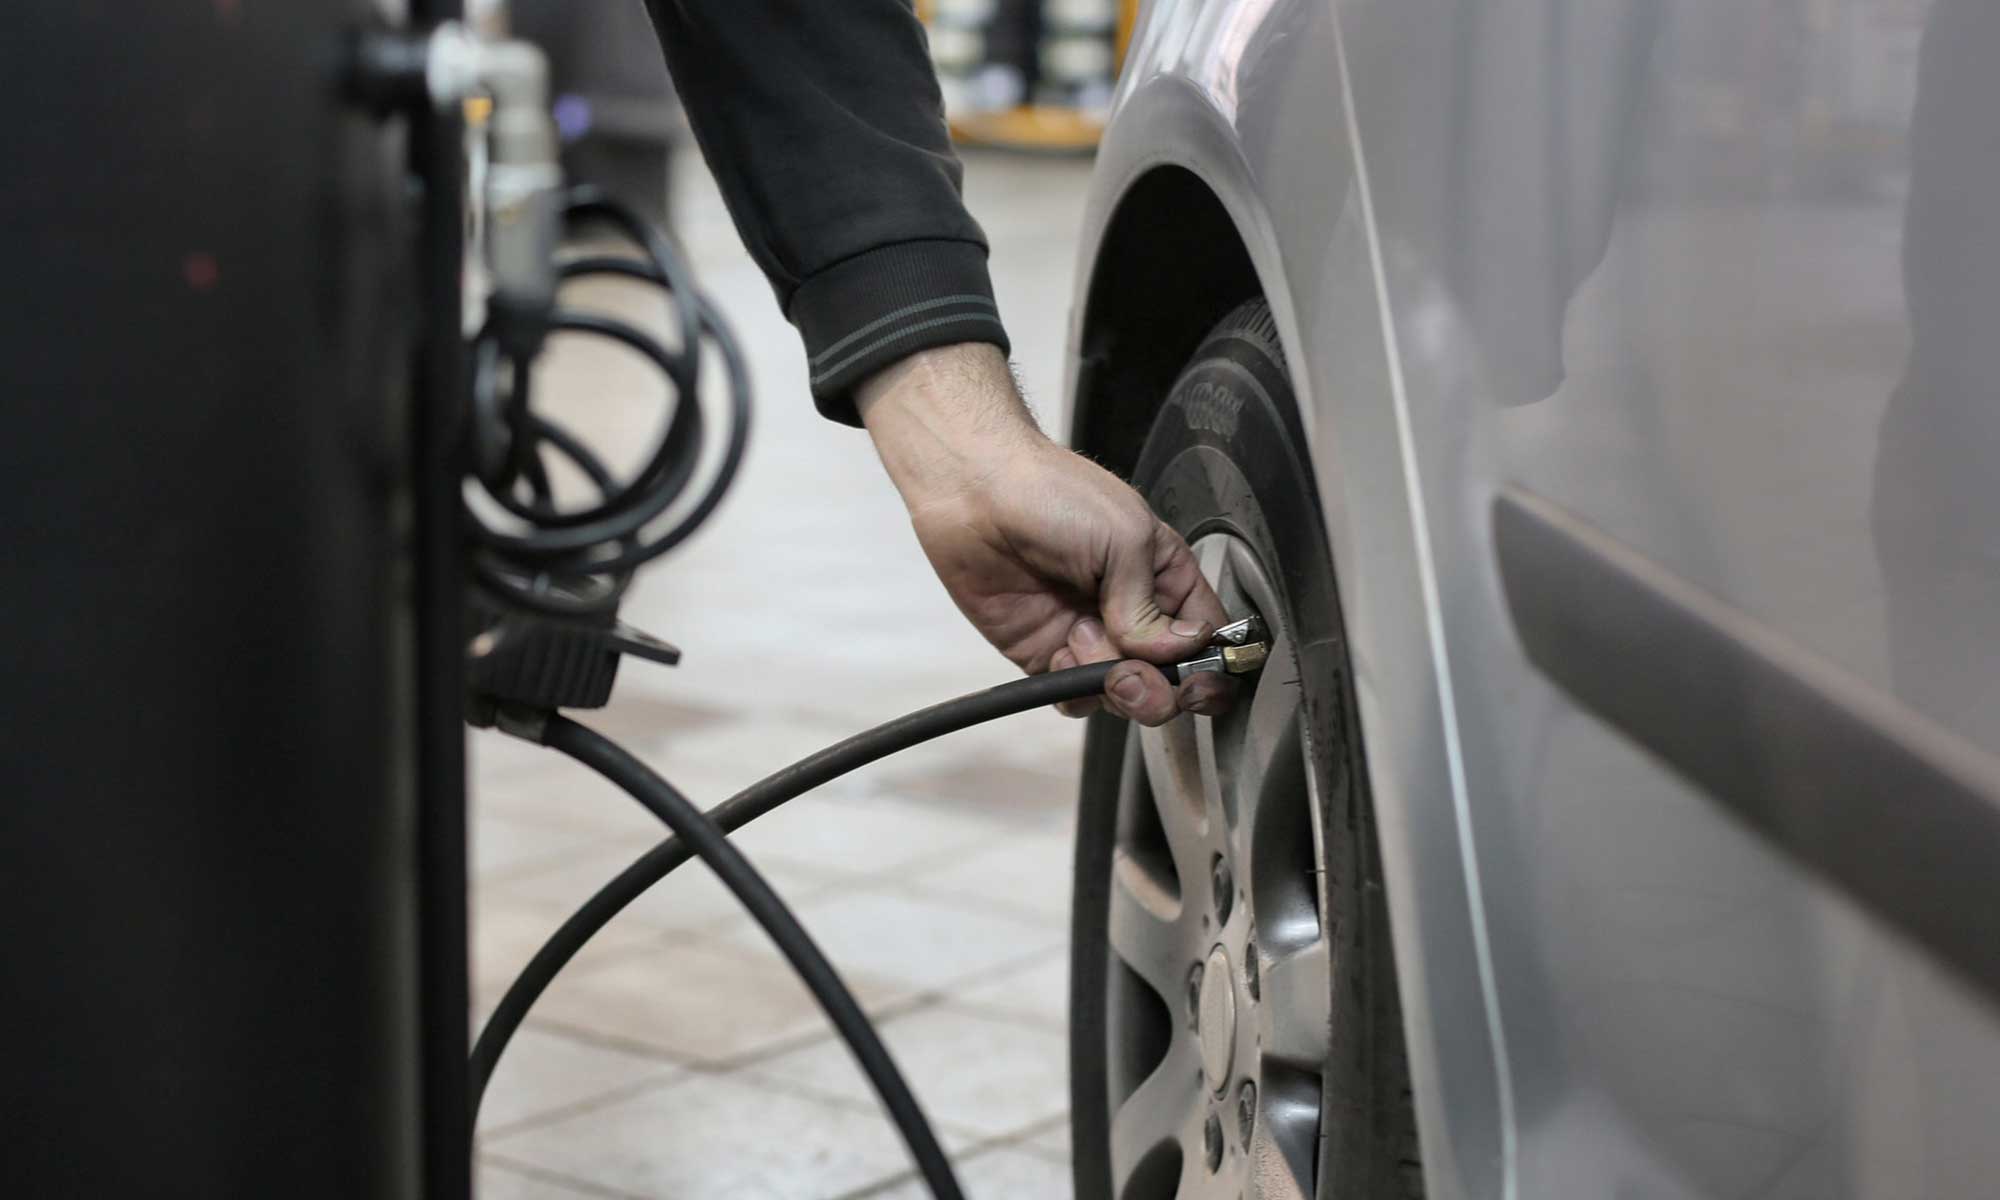 A man fills his car tire with air at an air pump.